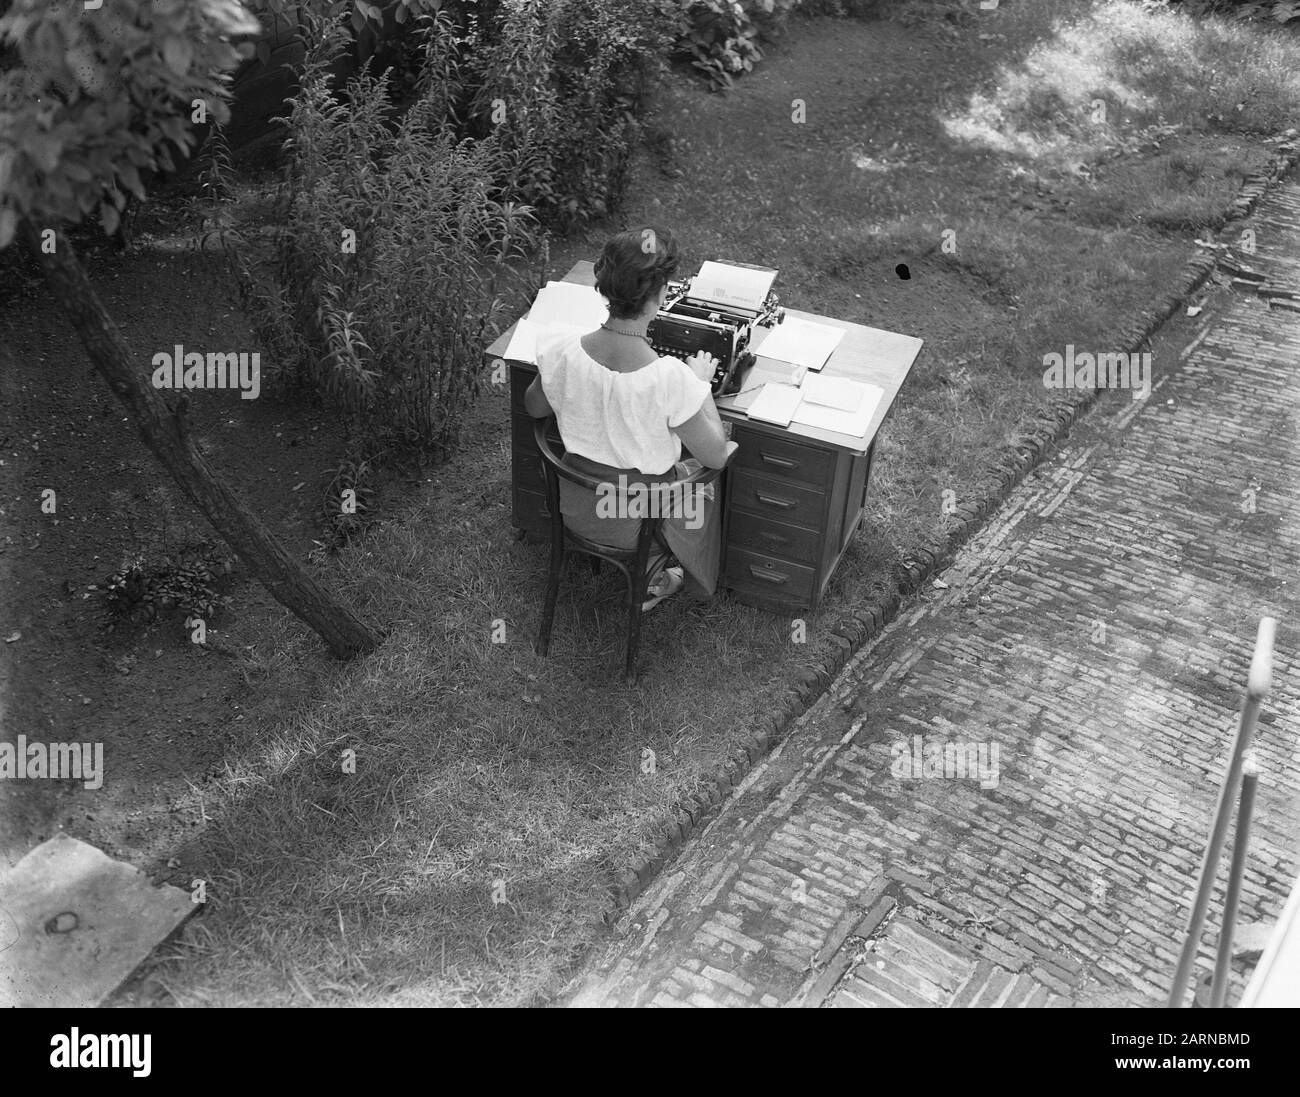 Heat Wave Lady mit Schreibtisch und Maschine im kühlen Garten Datum: 23. August 1955 Schlagwörter: Damen, Maschinen, Gärten Stockfoto